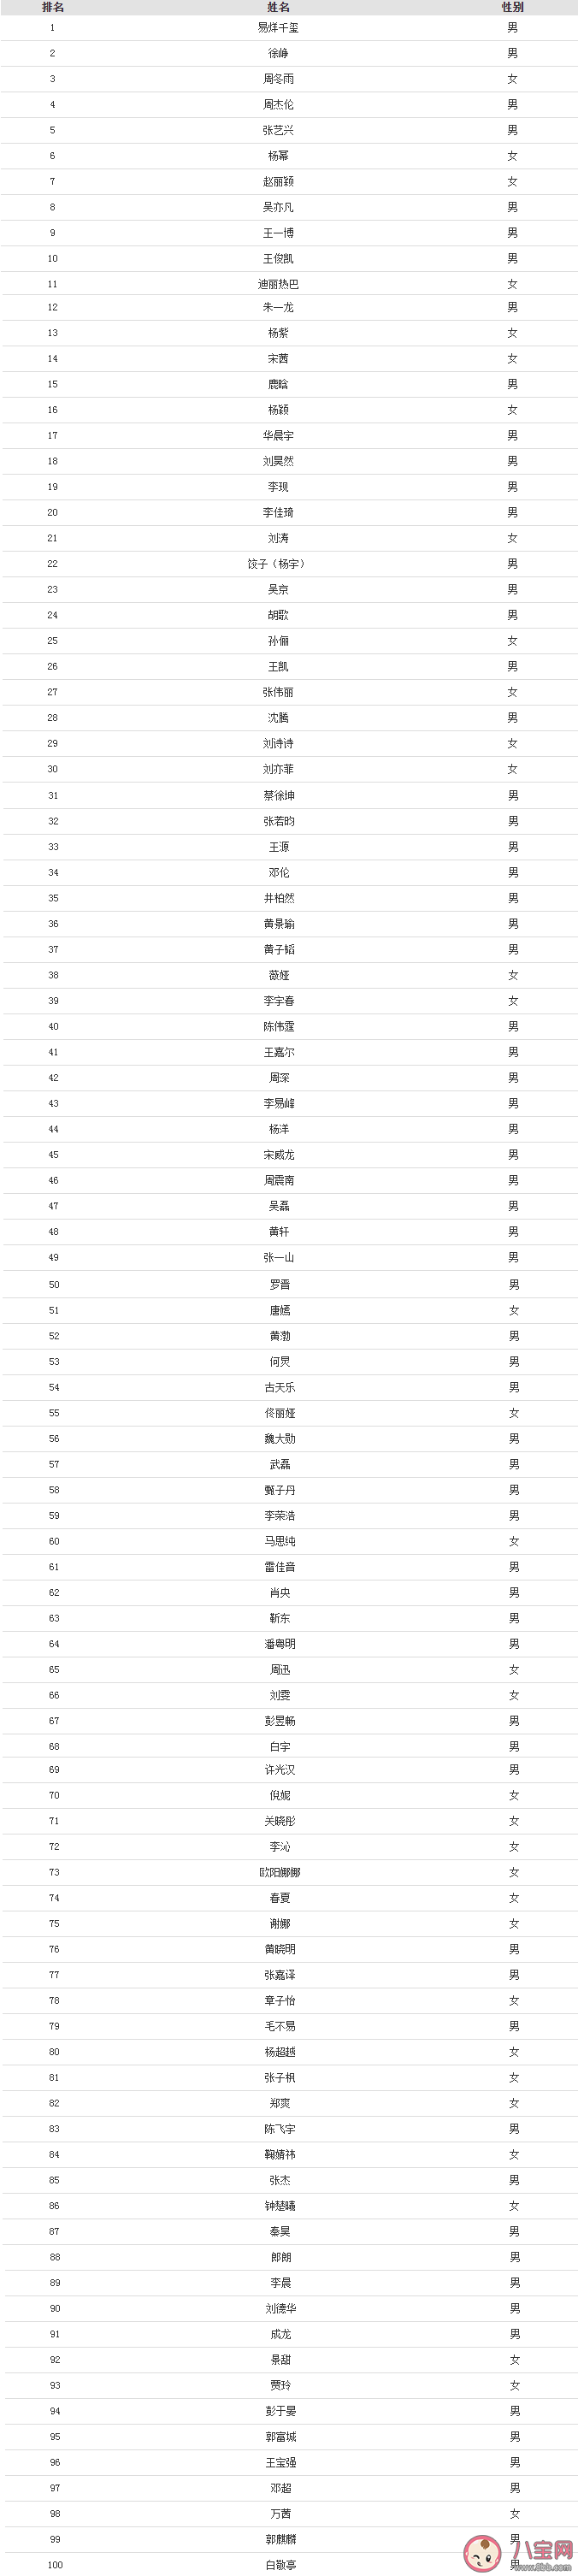 2020福布斯中国名人榜单排名一览 福布斯中国名人榜单前100名是谁